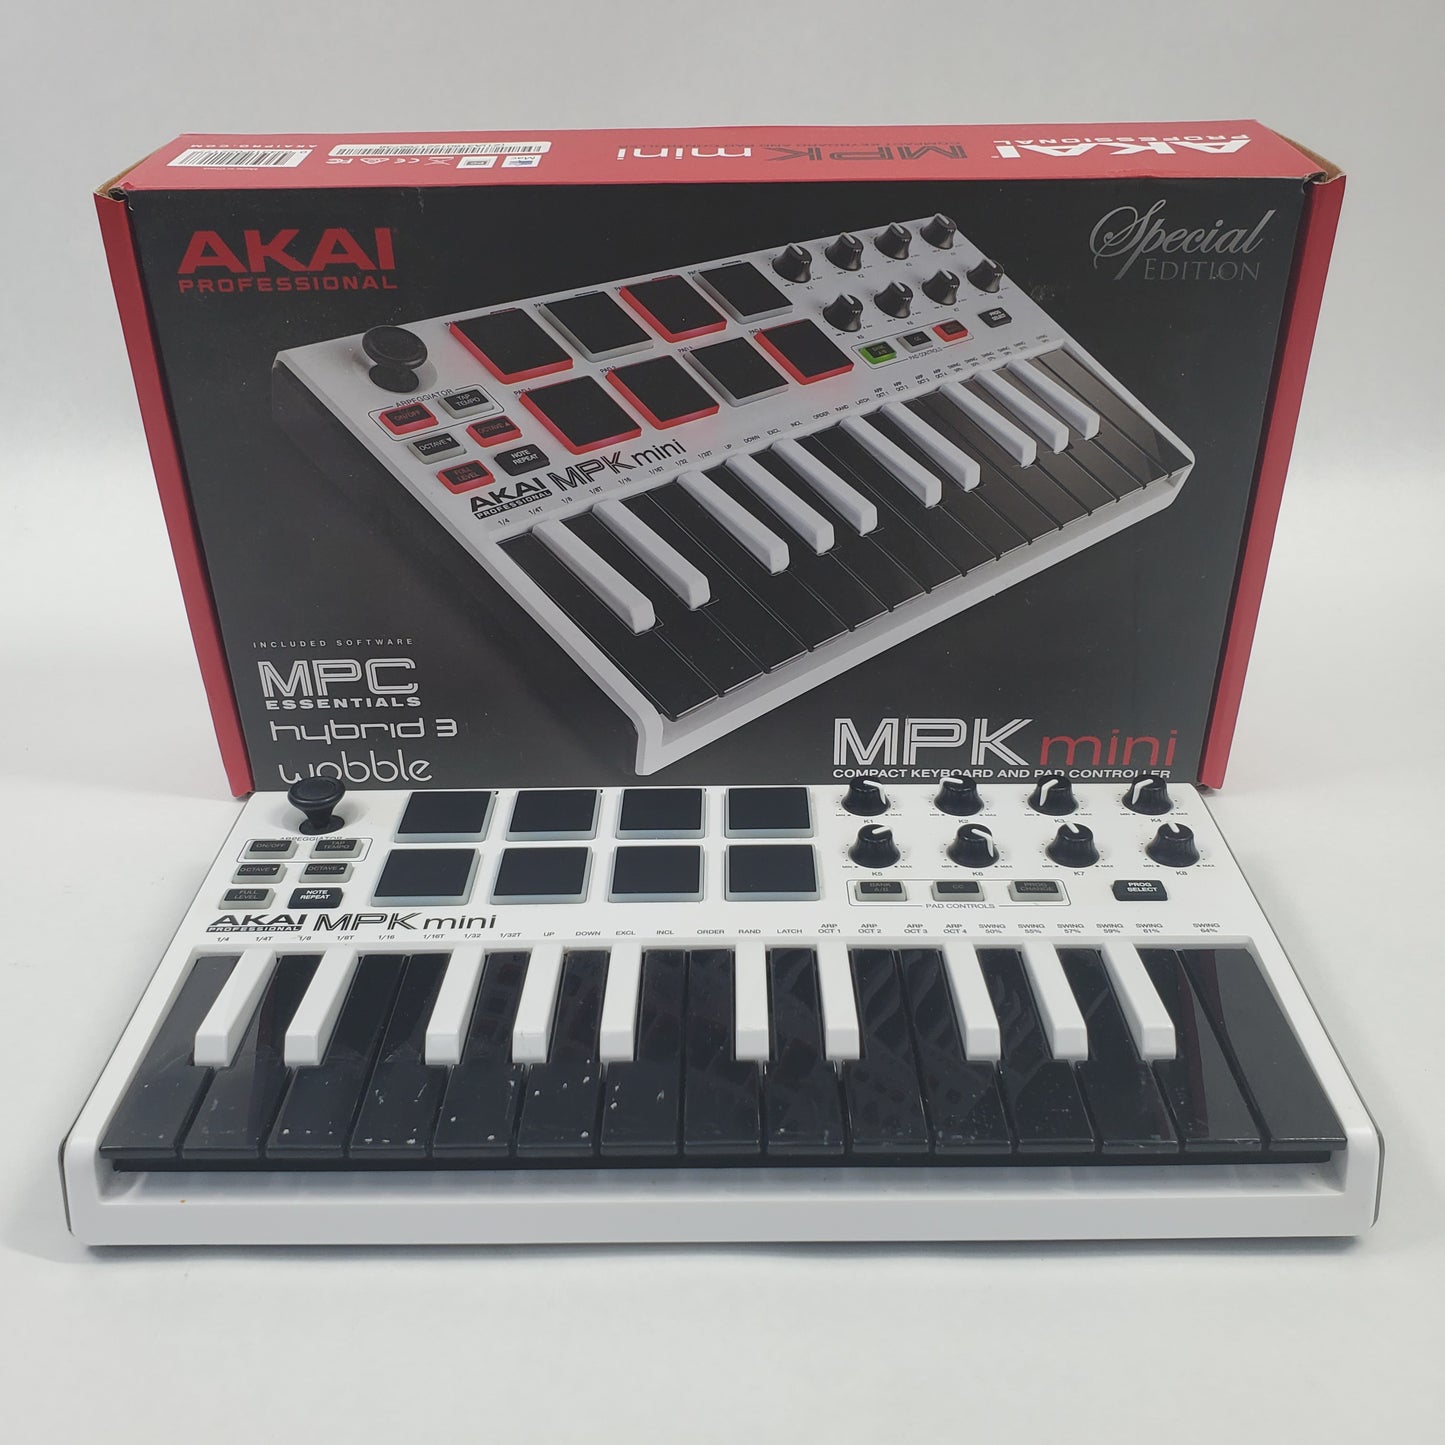 Broken Akai MPK Mini Compact Keyboard and Pad Controller